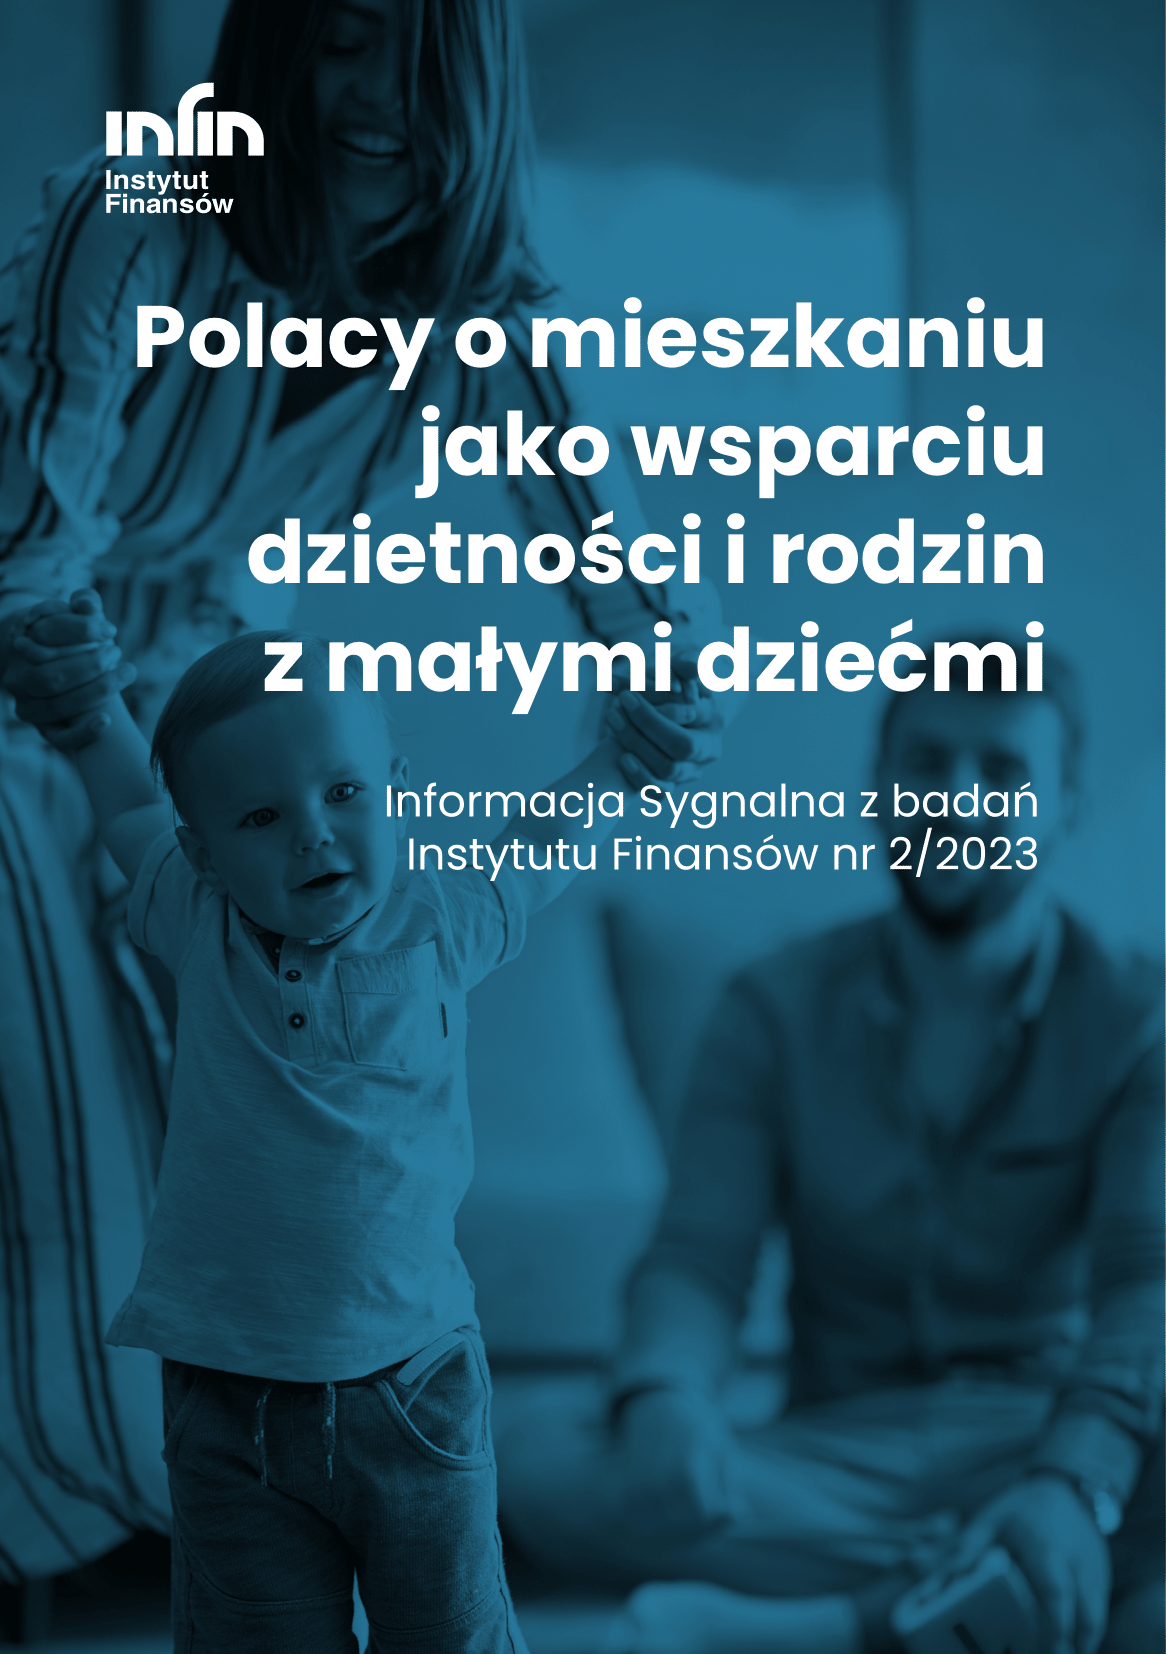 Polacy o mieszkaniu jako wsparciu dzietnosci i rodzin z malymi dziecmi . 1